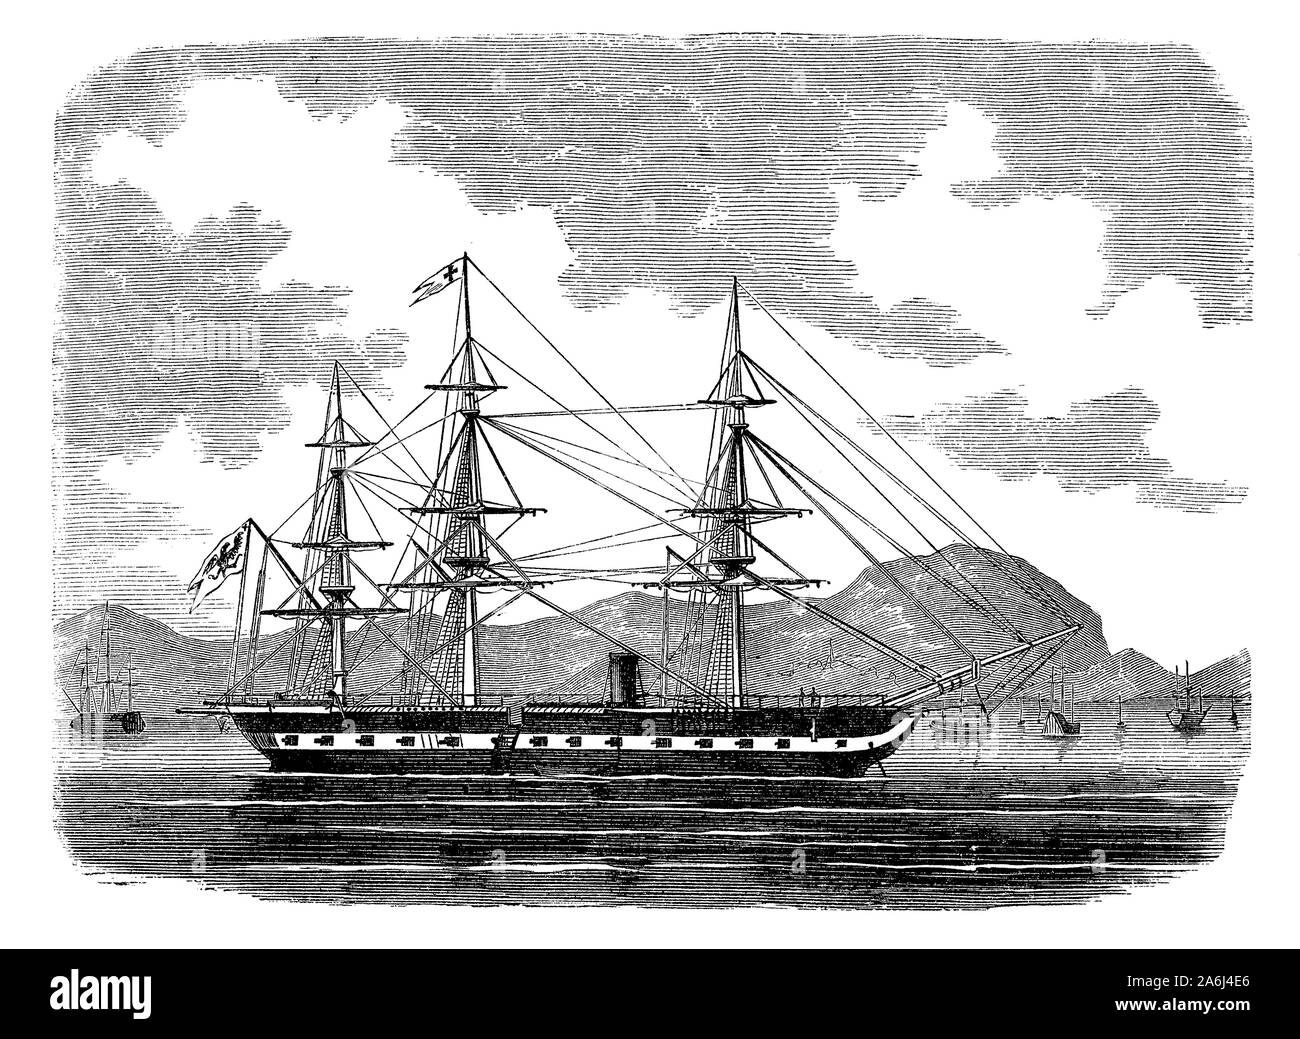 SMS Arcona Deutsche Dampf Corvette im Jahr 1886 abgeschlossen, Kombination aus Dampf und Segel für den erweiterten Bereich Patrouille mit 18 Kanonen Stockfoto